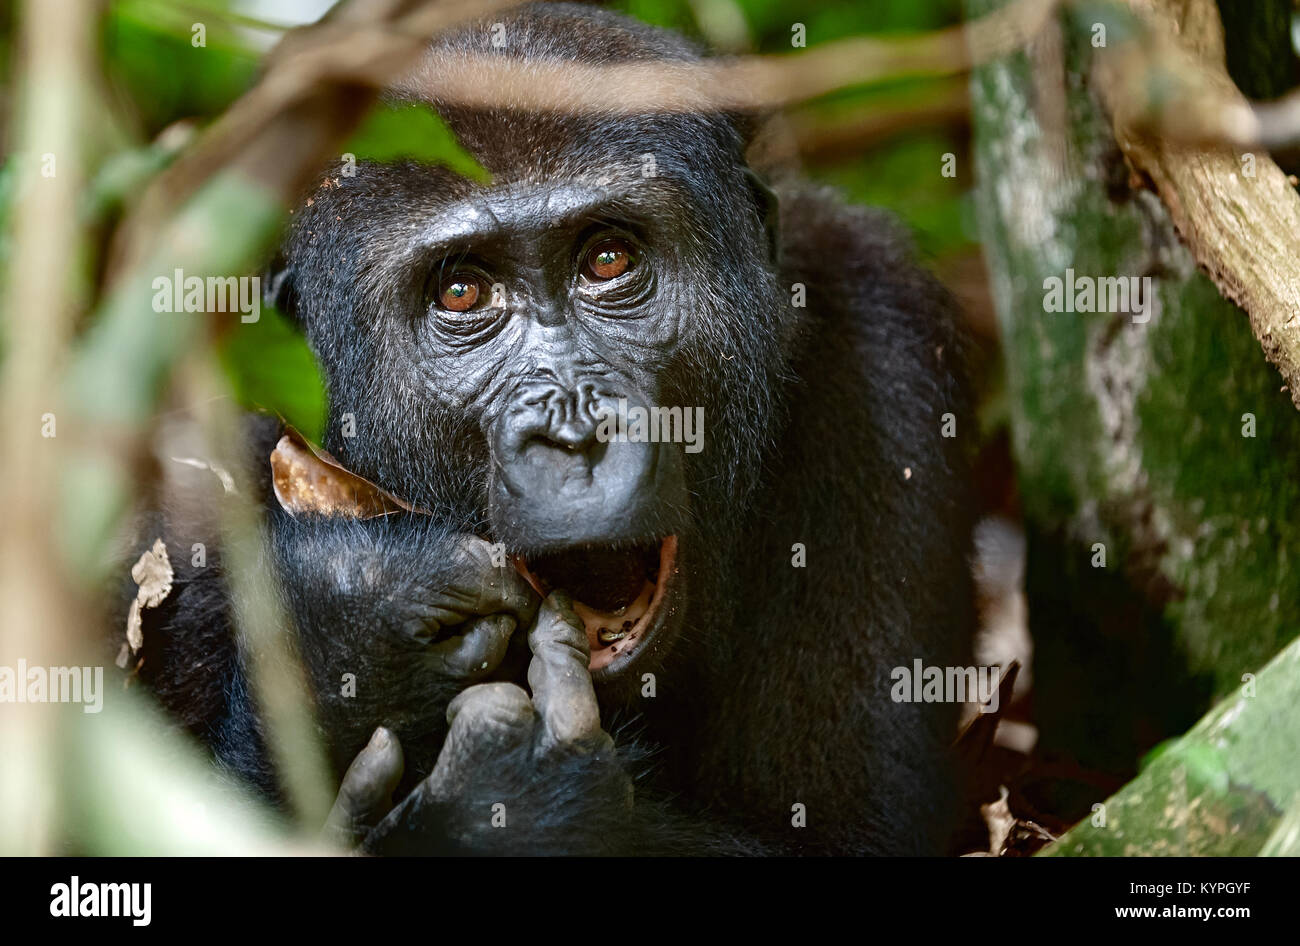 Ritratto di una pianura occidentale (gorilla Gorilla gorilla gorilla) chiudere fino a breve distanza. femmina adulta di un gorilla in un habitat naturale. Jungle o Foto Stock